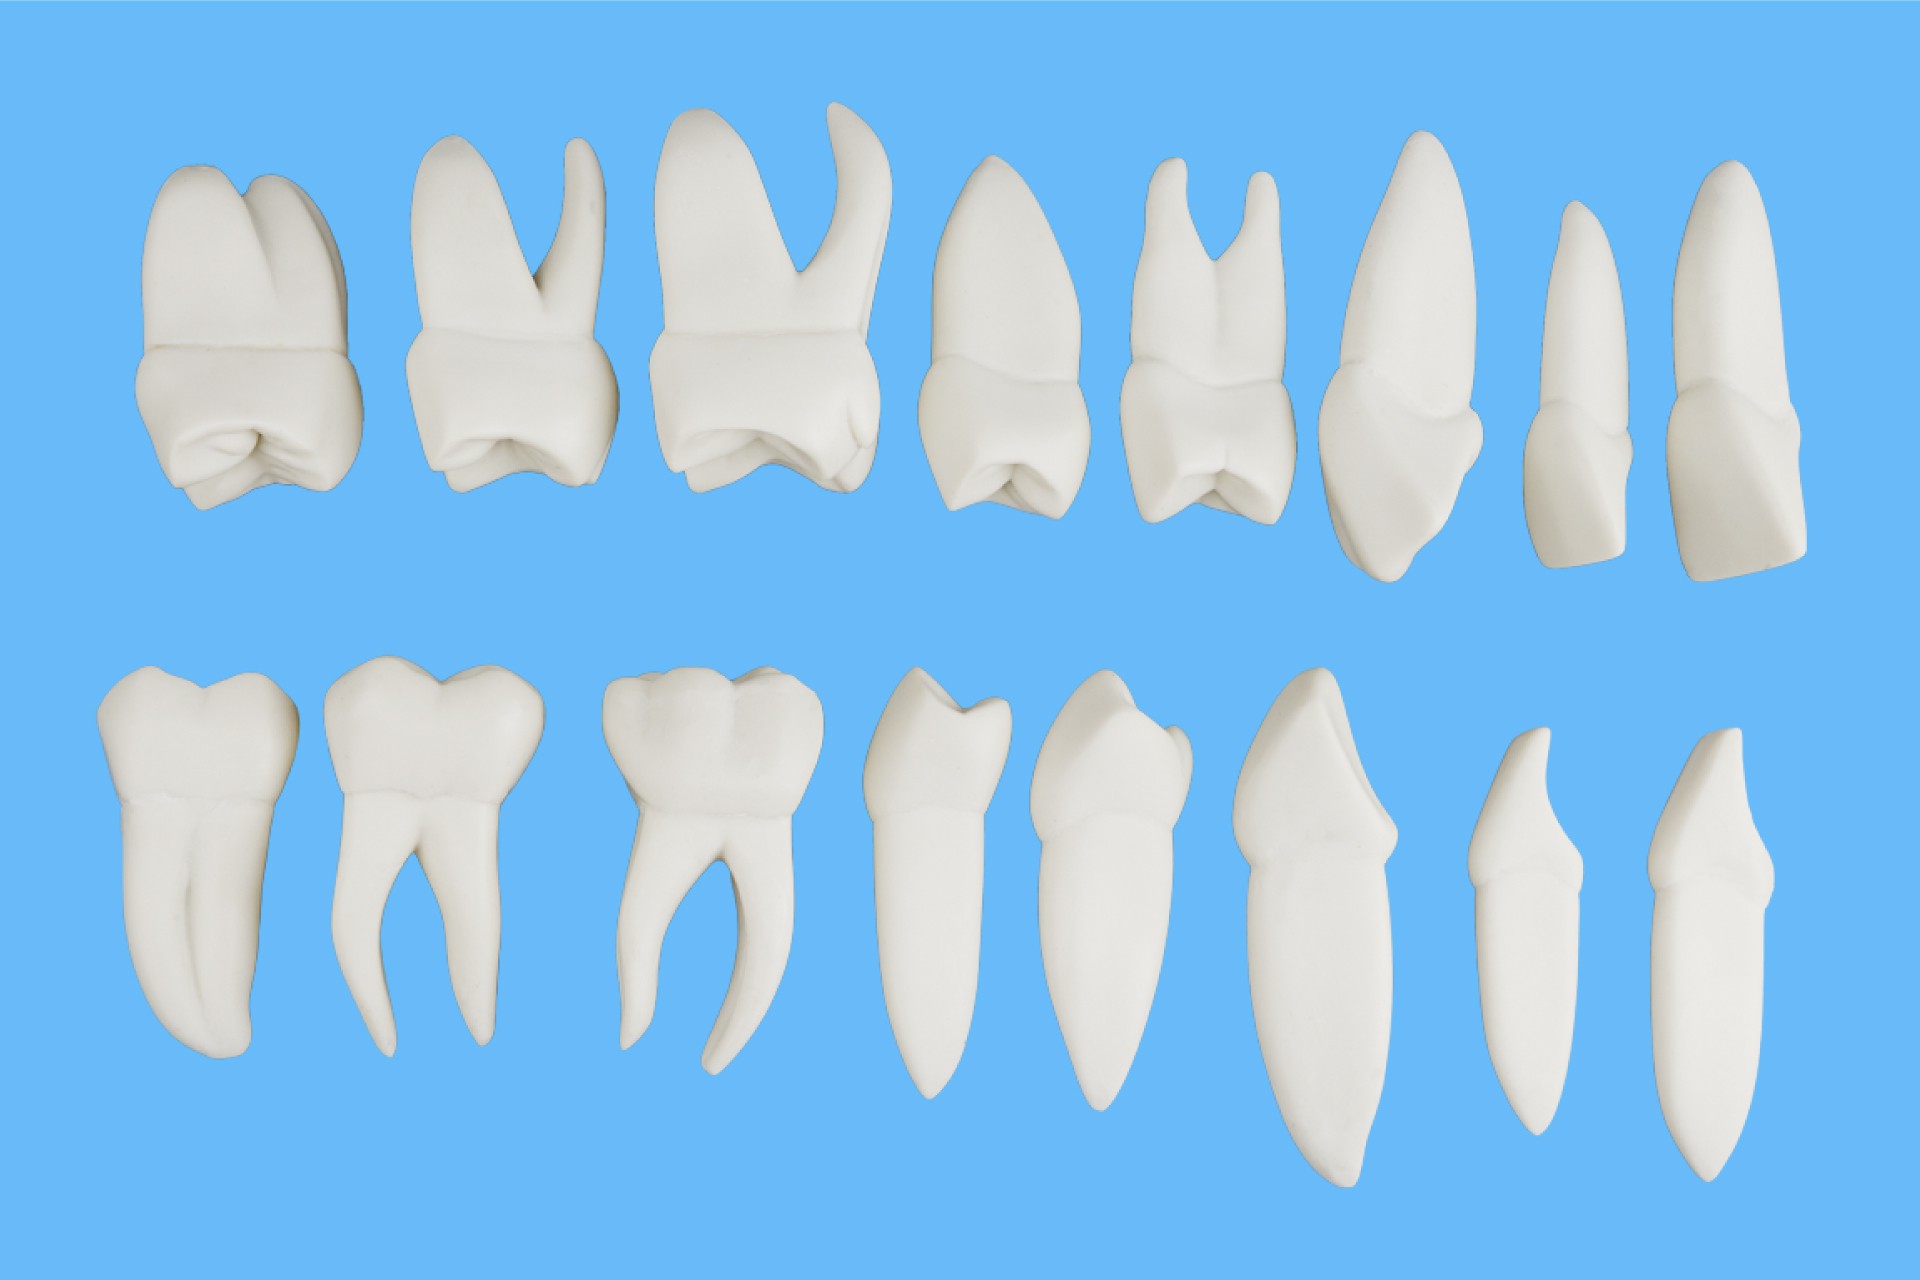 ست آموزشی آناتومی و ریشه دار دندان 16 عددی X5